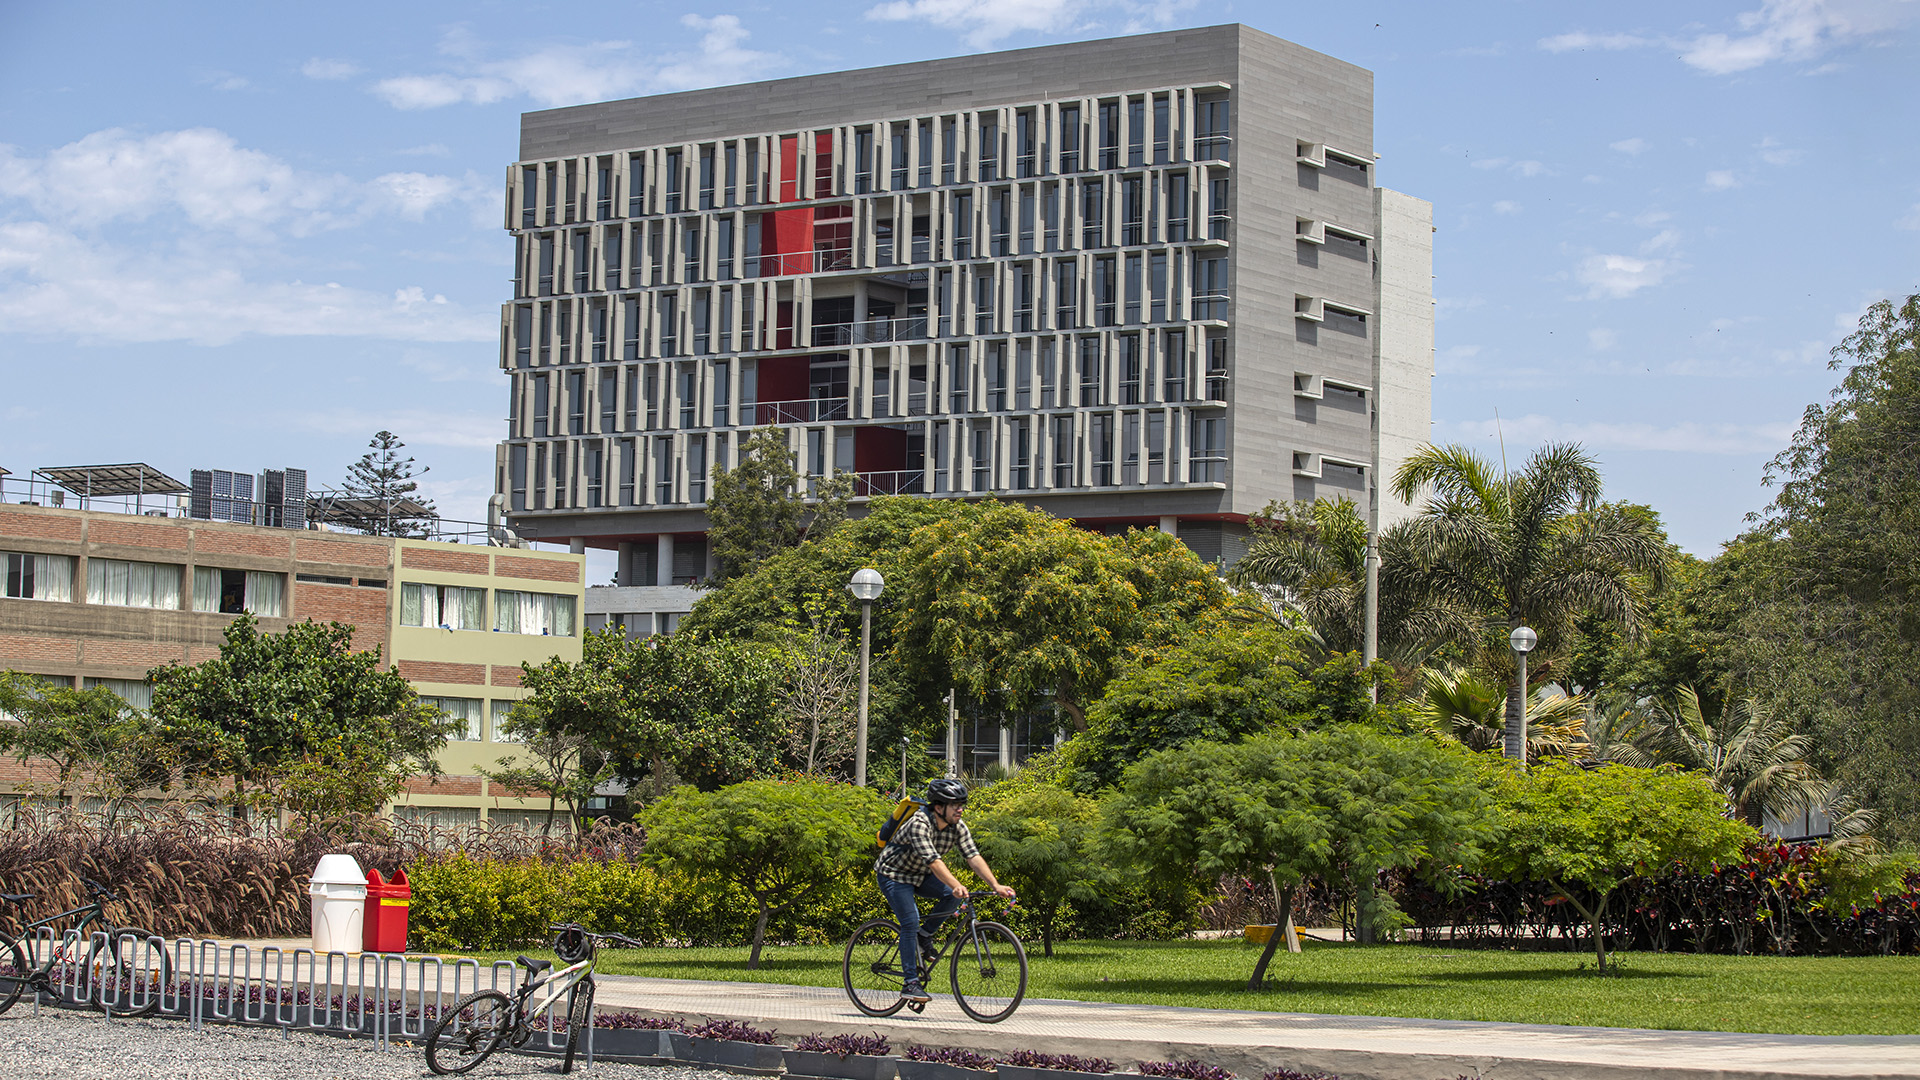 foto del campus de la PUCP: se ve un edificio de unos ocho pisos, más ancho que alto, en color plomo, ventanas con salientes y algunas aplicaciones en rojo. delante hay un jardín con árboles y en primer plano se ve un ciclista que pedalea en una vereda.